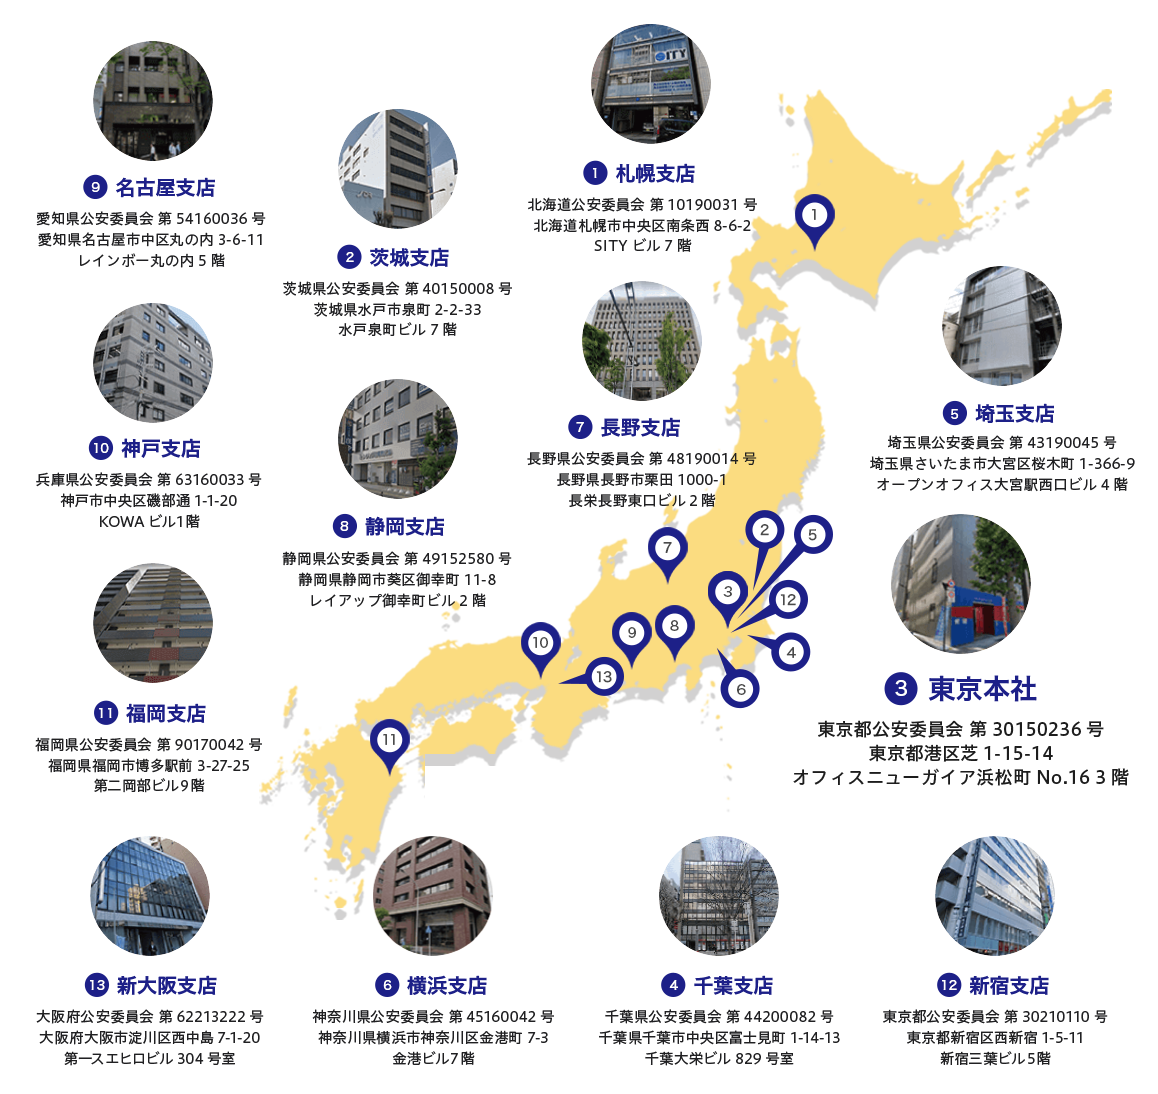 上は茨城から下は福岡まで、日本全国で13支店ございます